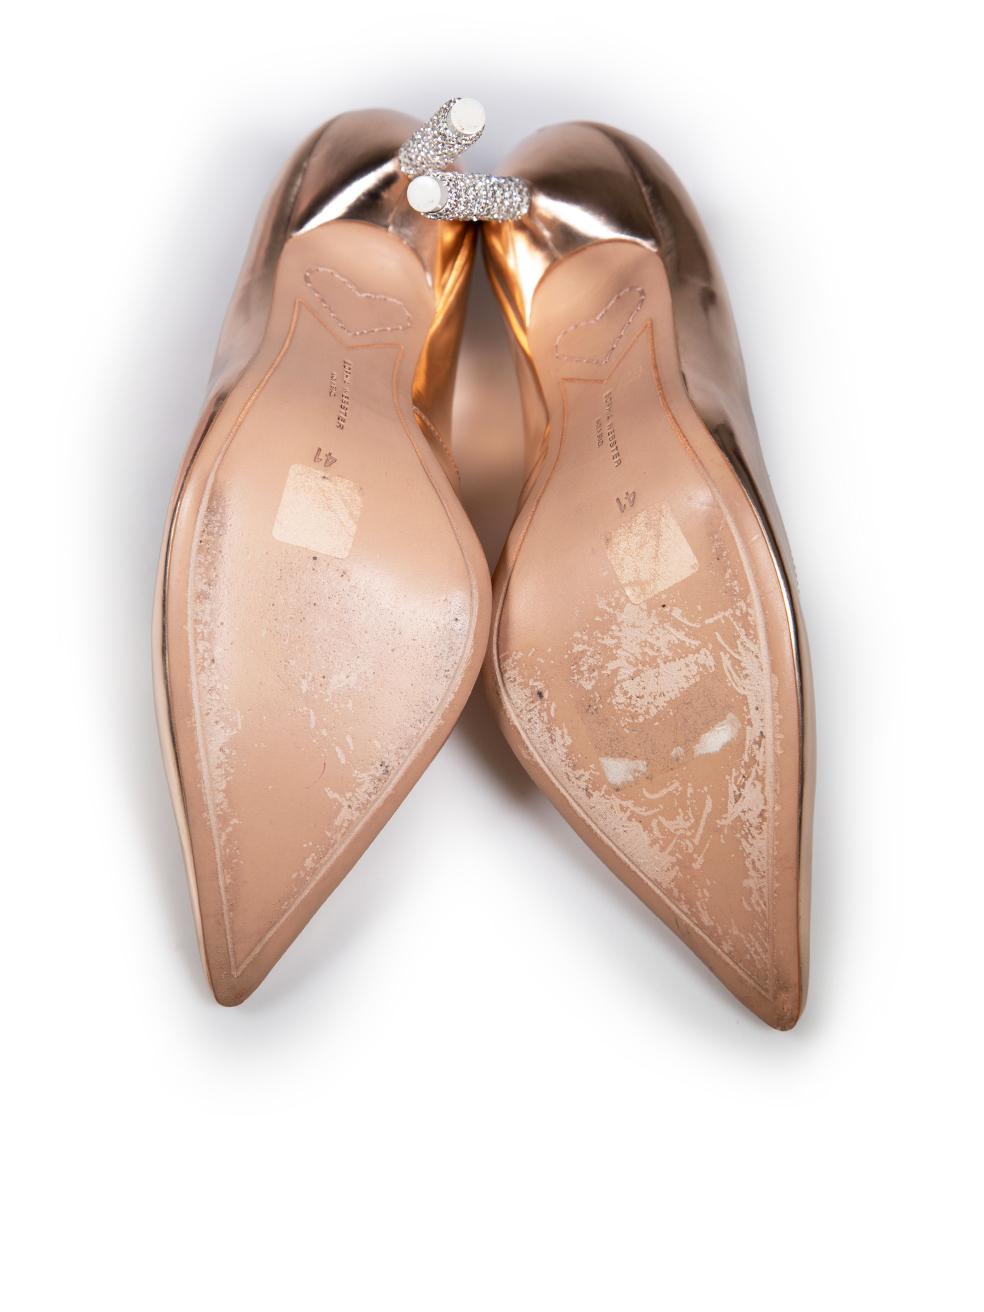 Women's Sophia Webster Rose Gold Leather Embellished Heels Size IT 41 For Sale